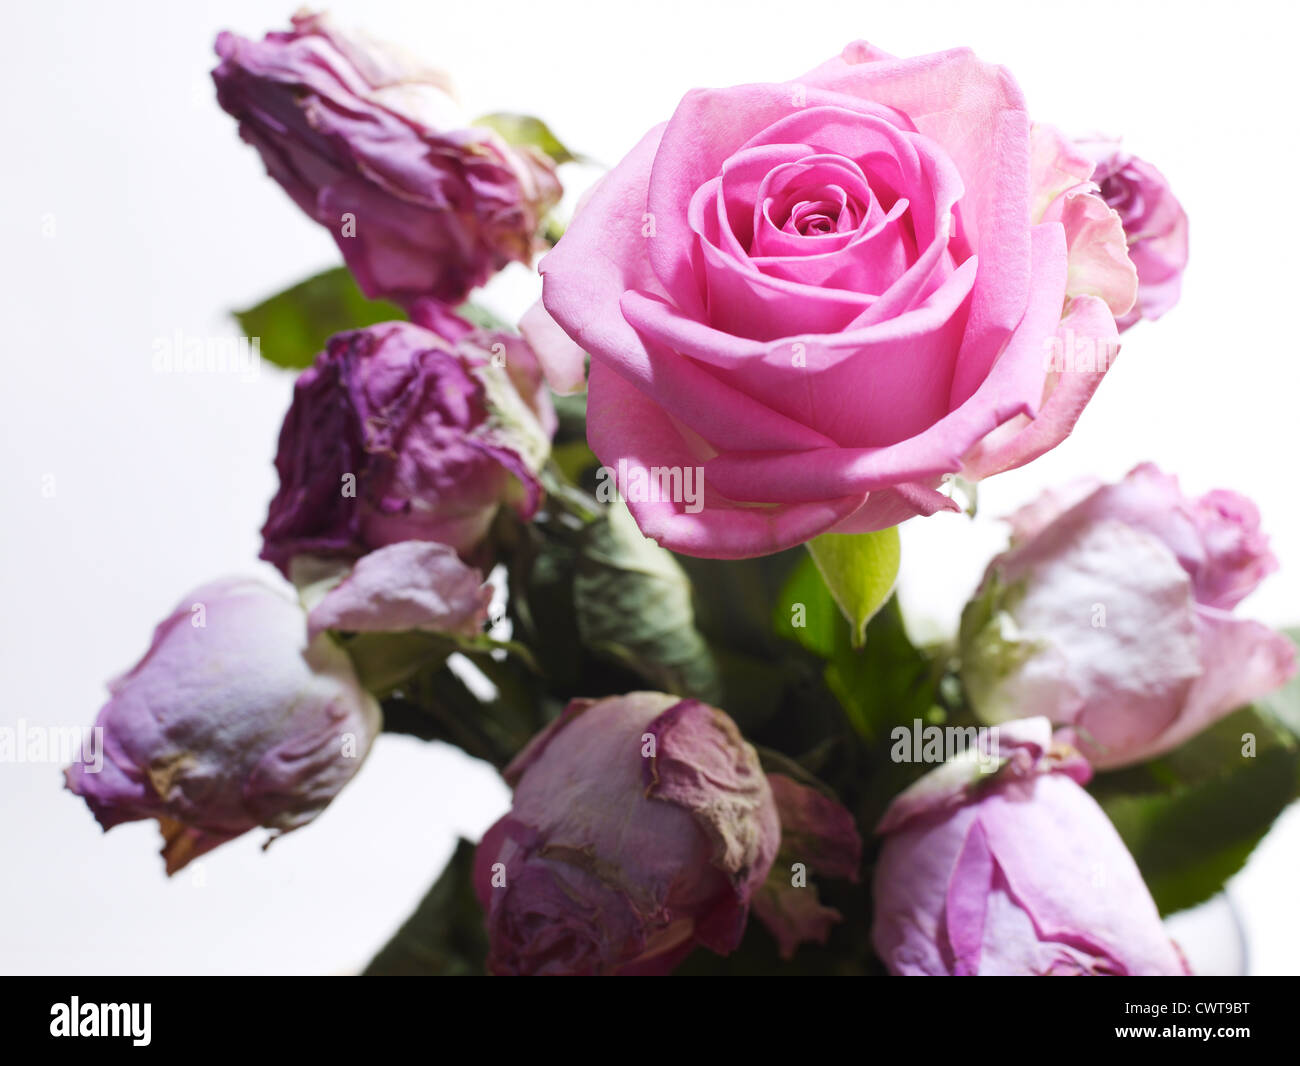 Dead dan flowering pink rose Stock Photo